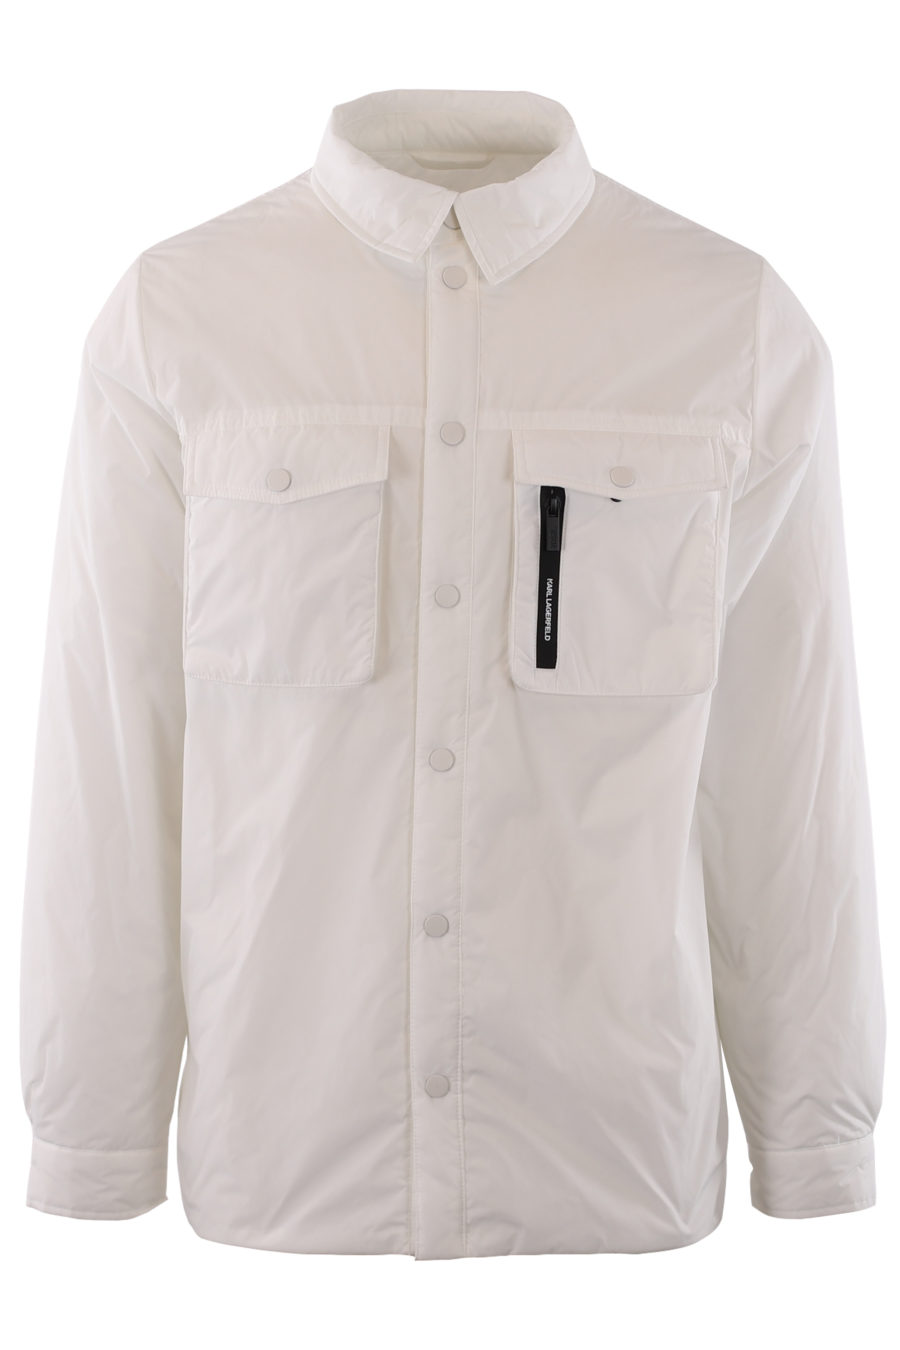 Casaco impermeável branco com botões - IMG 9189